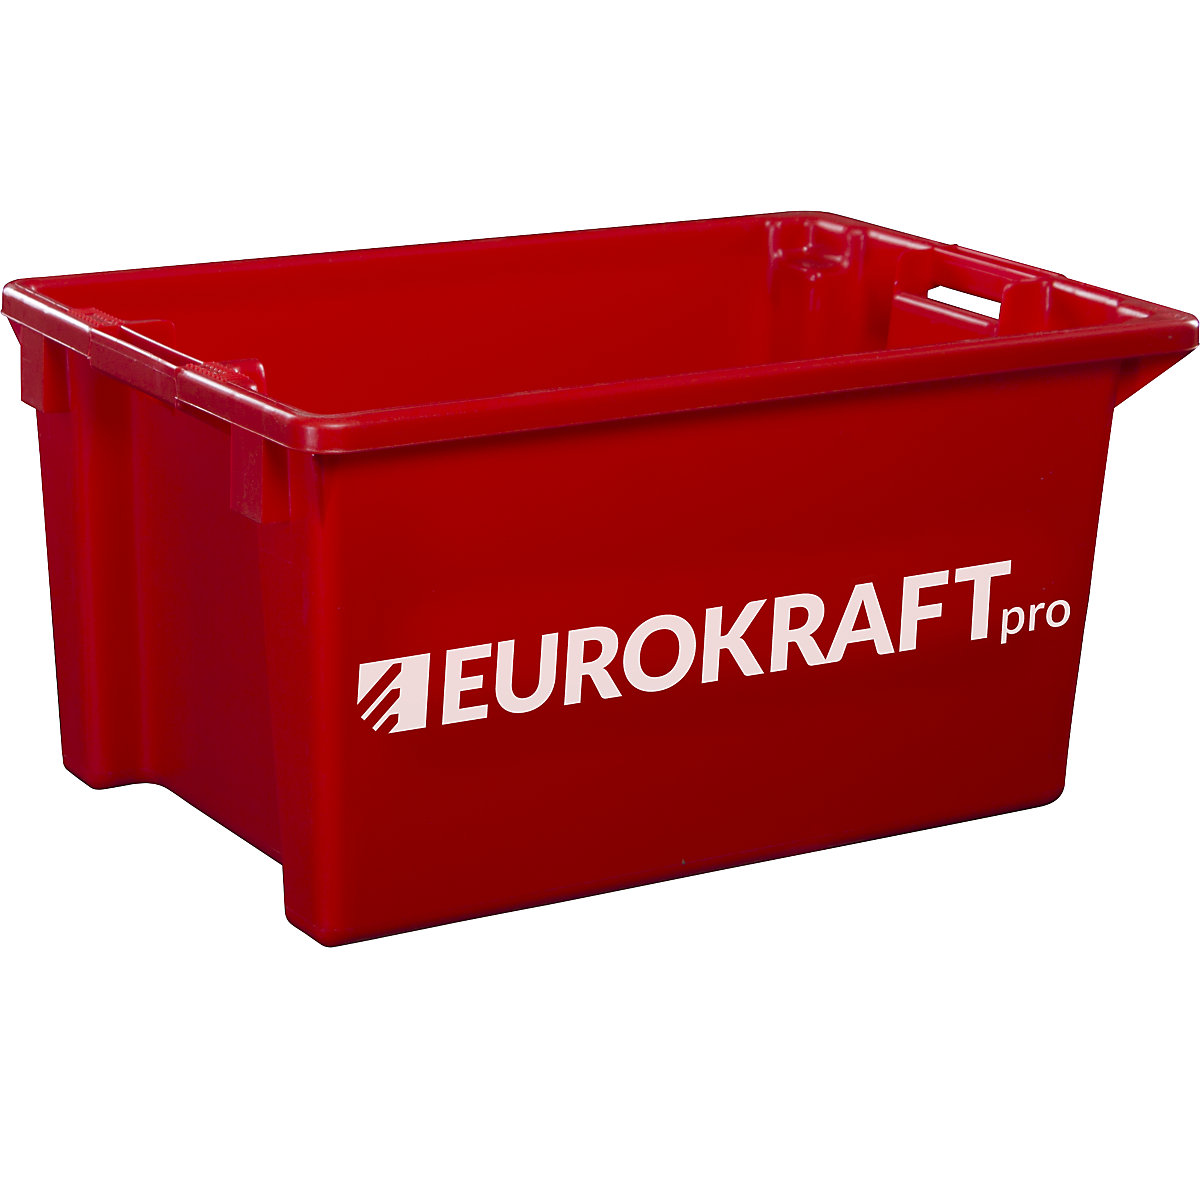 Cutie de depozitare din polipropilenă, adecvată pentru alimente - eurokraft pro